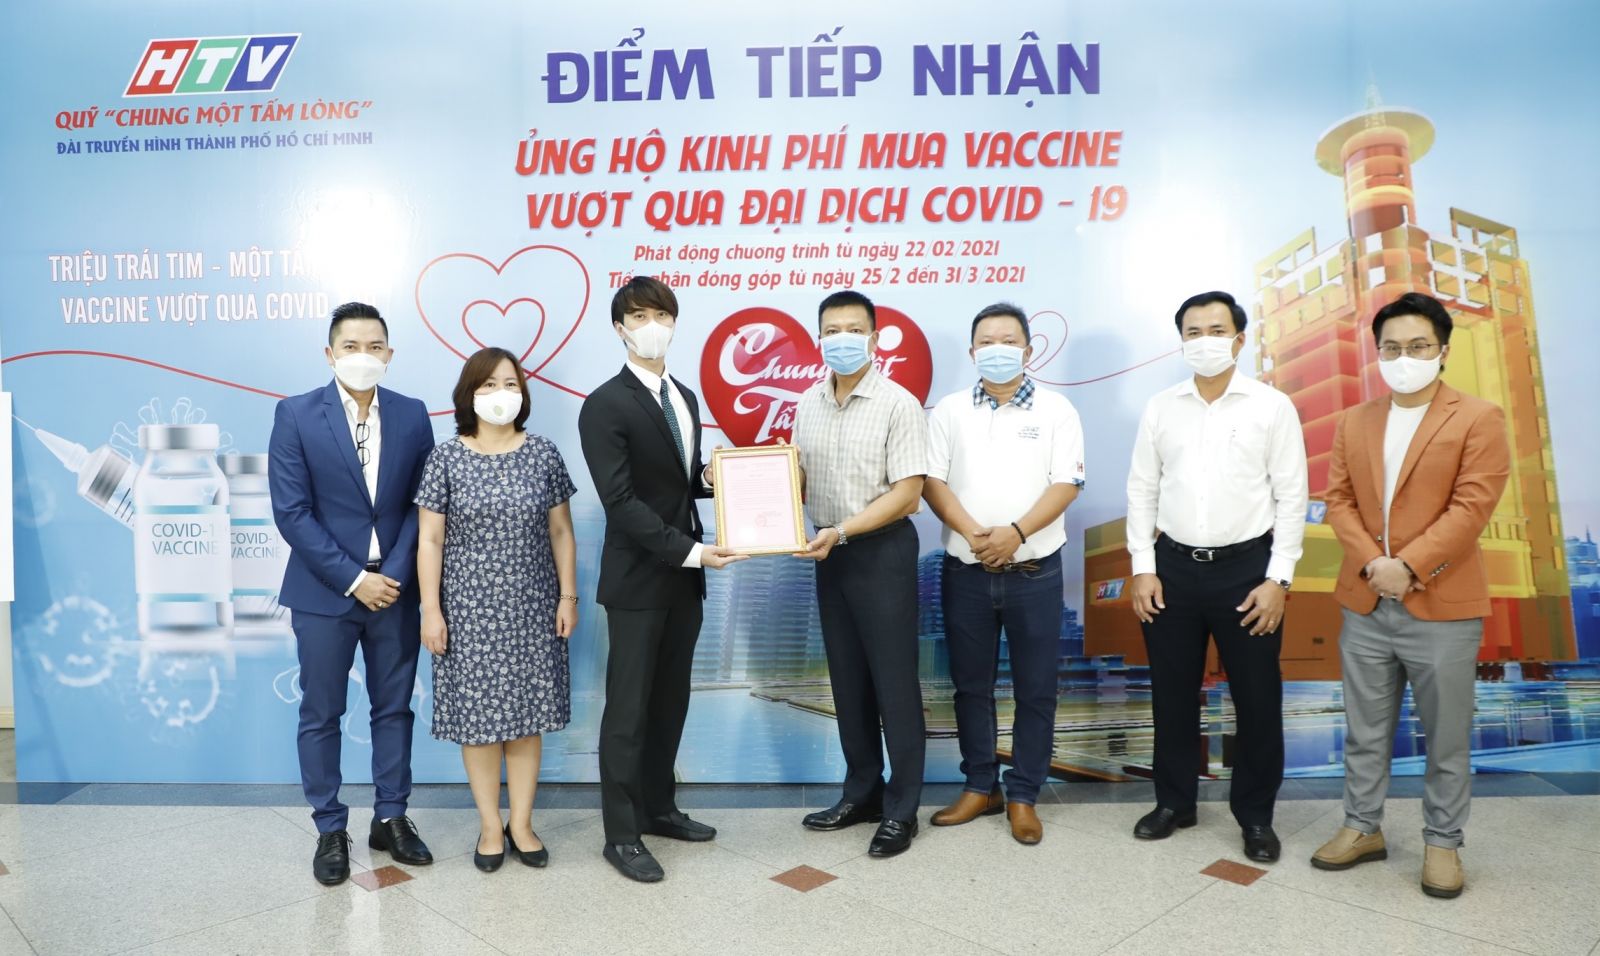 Ông Phạm Danh – Phó TGĐ Van Phuc Group nhận thư cảm ơn của Đài TH HTV - Ảnh: XT